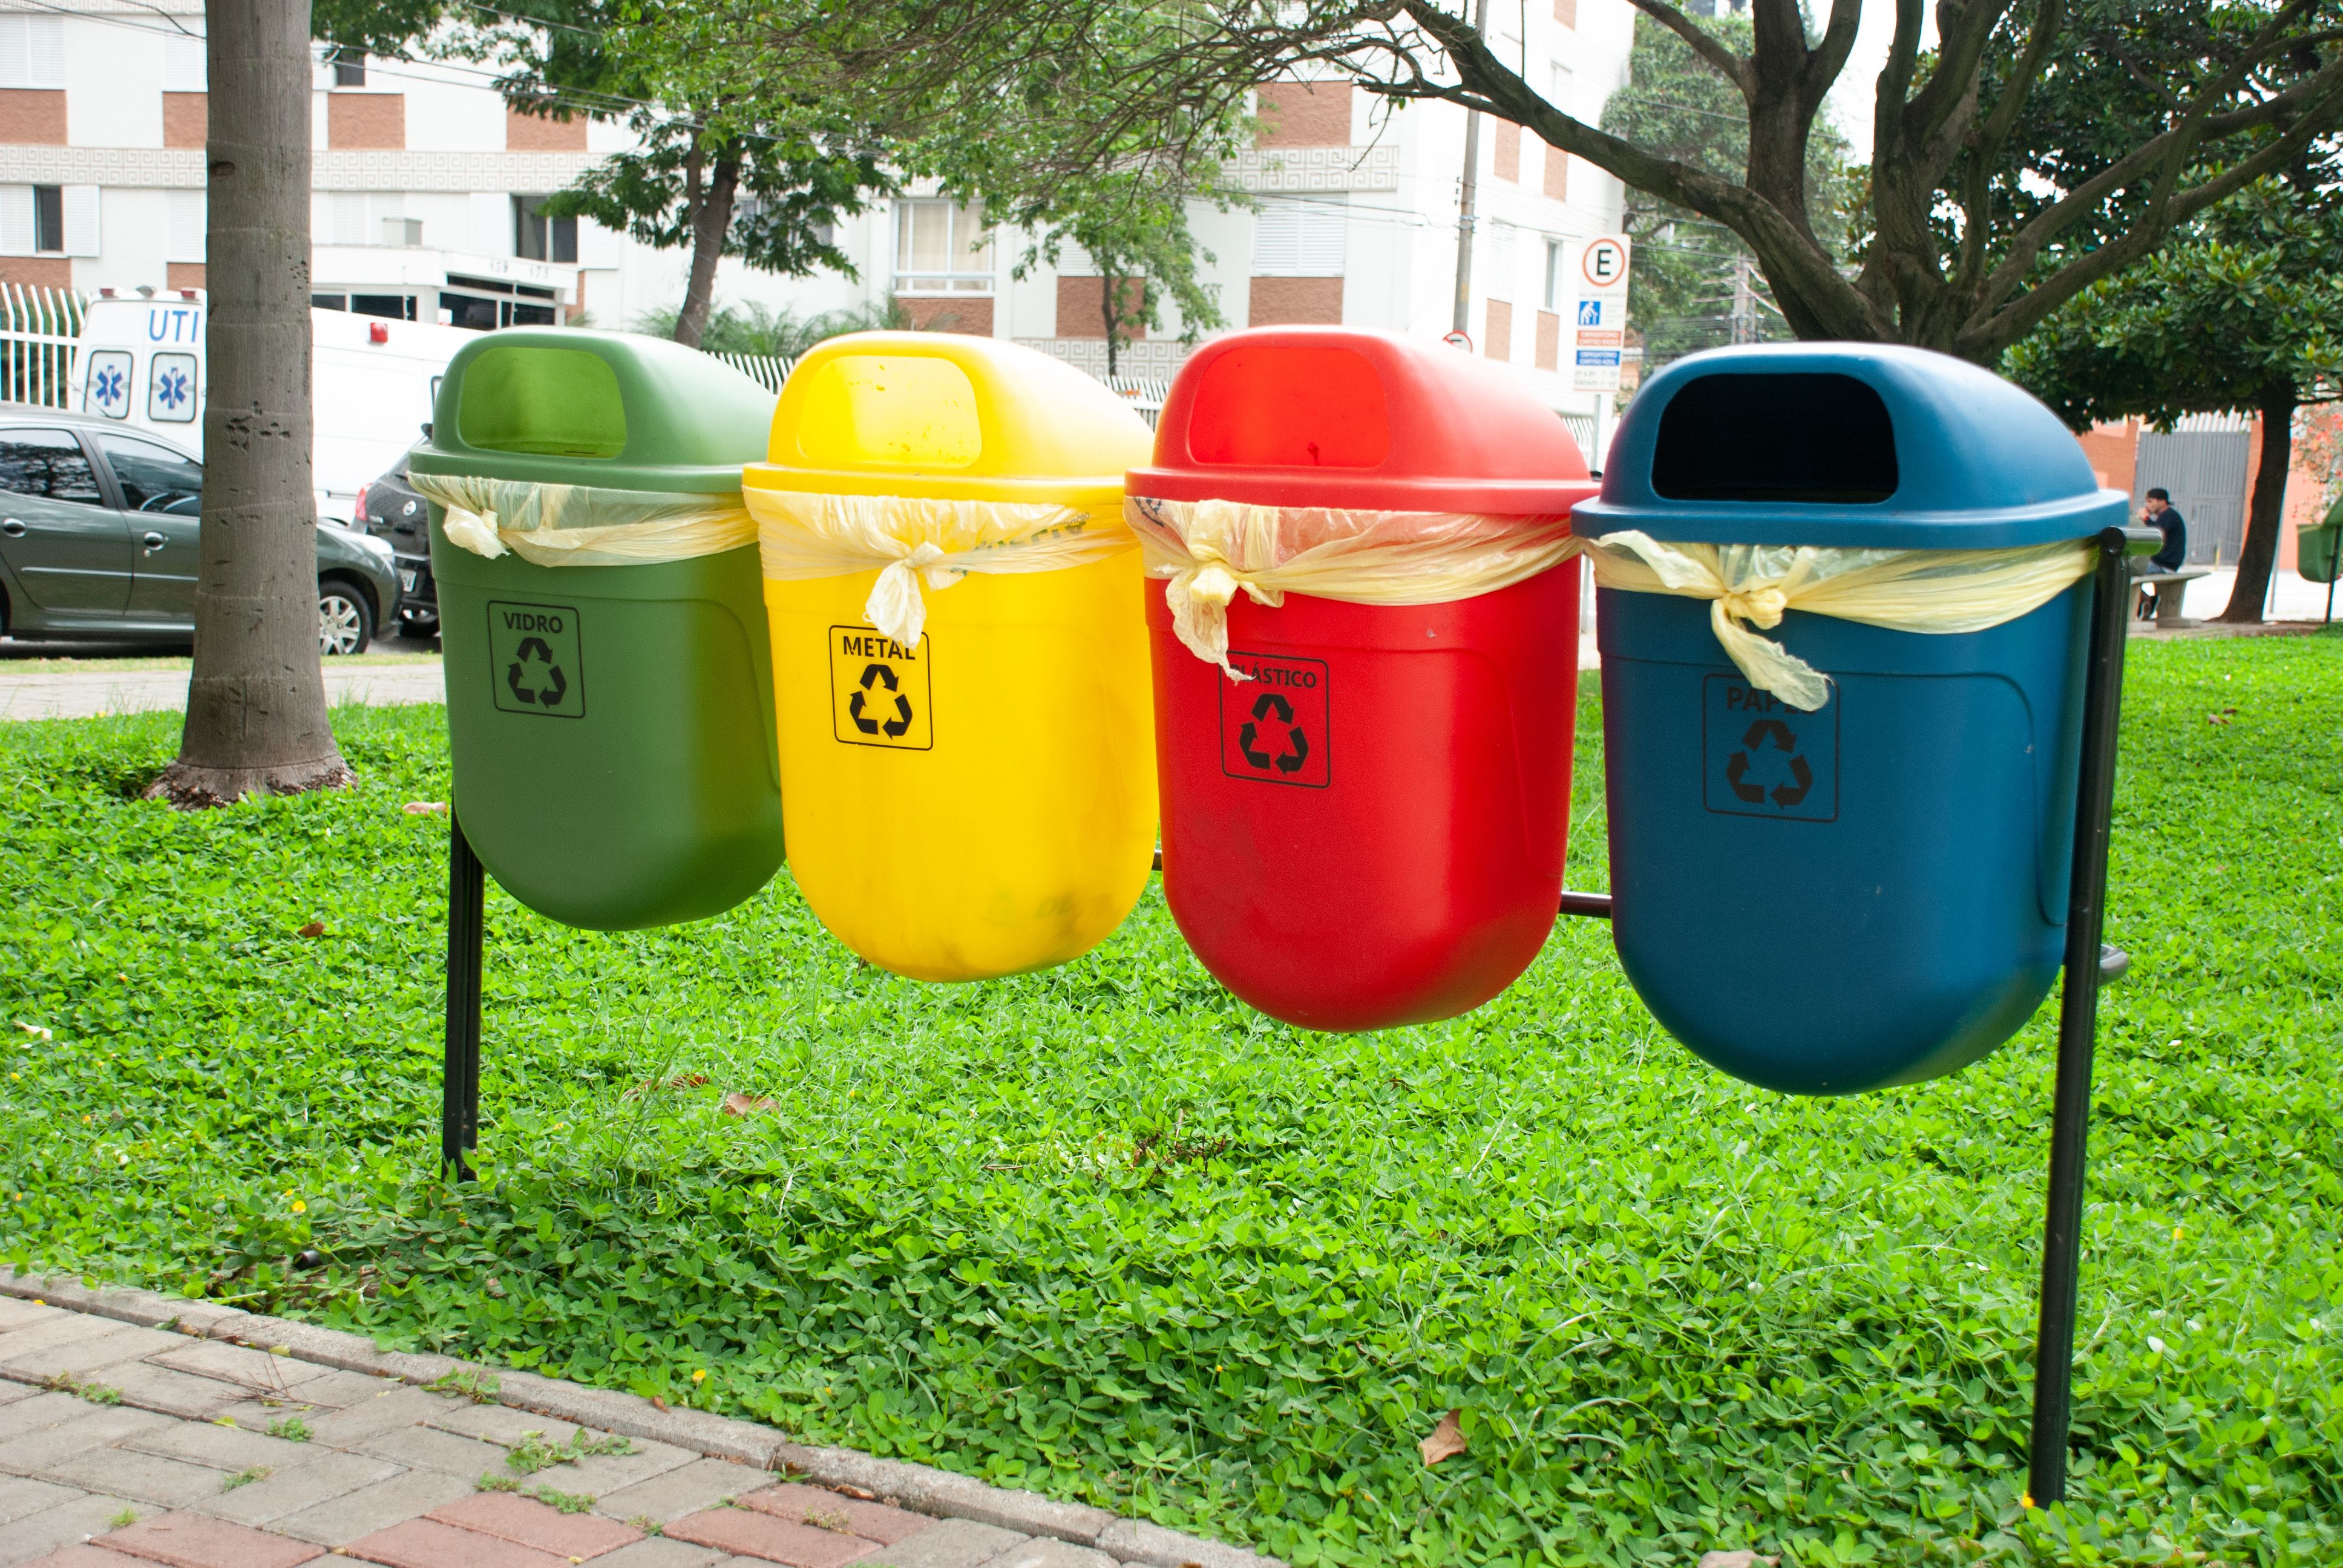 Recycling bins on a street in São Paulo, Brazil.